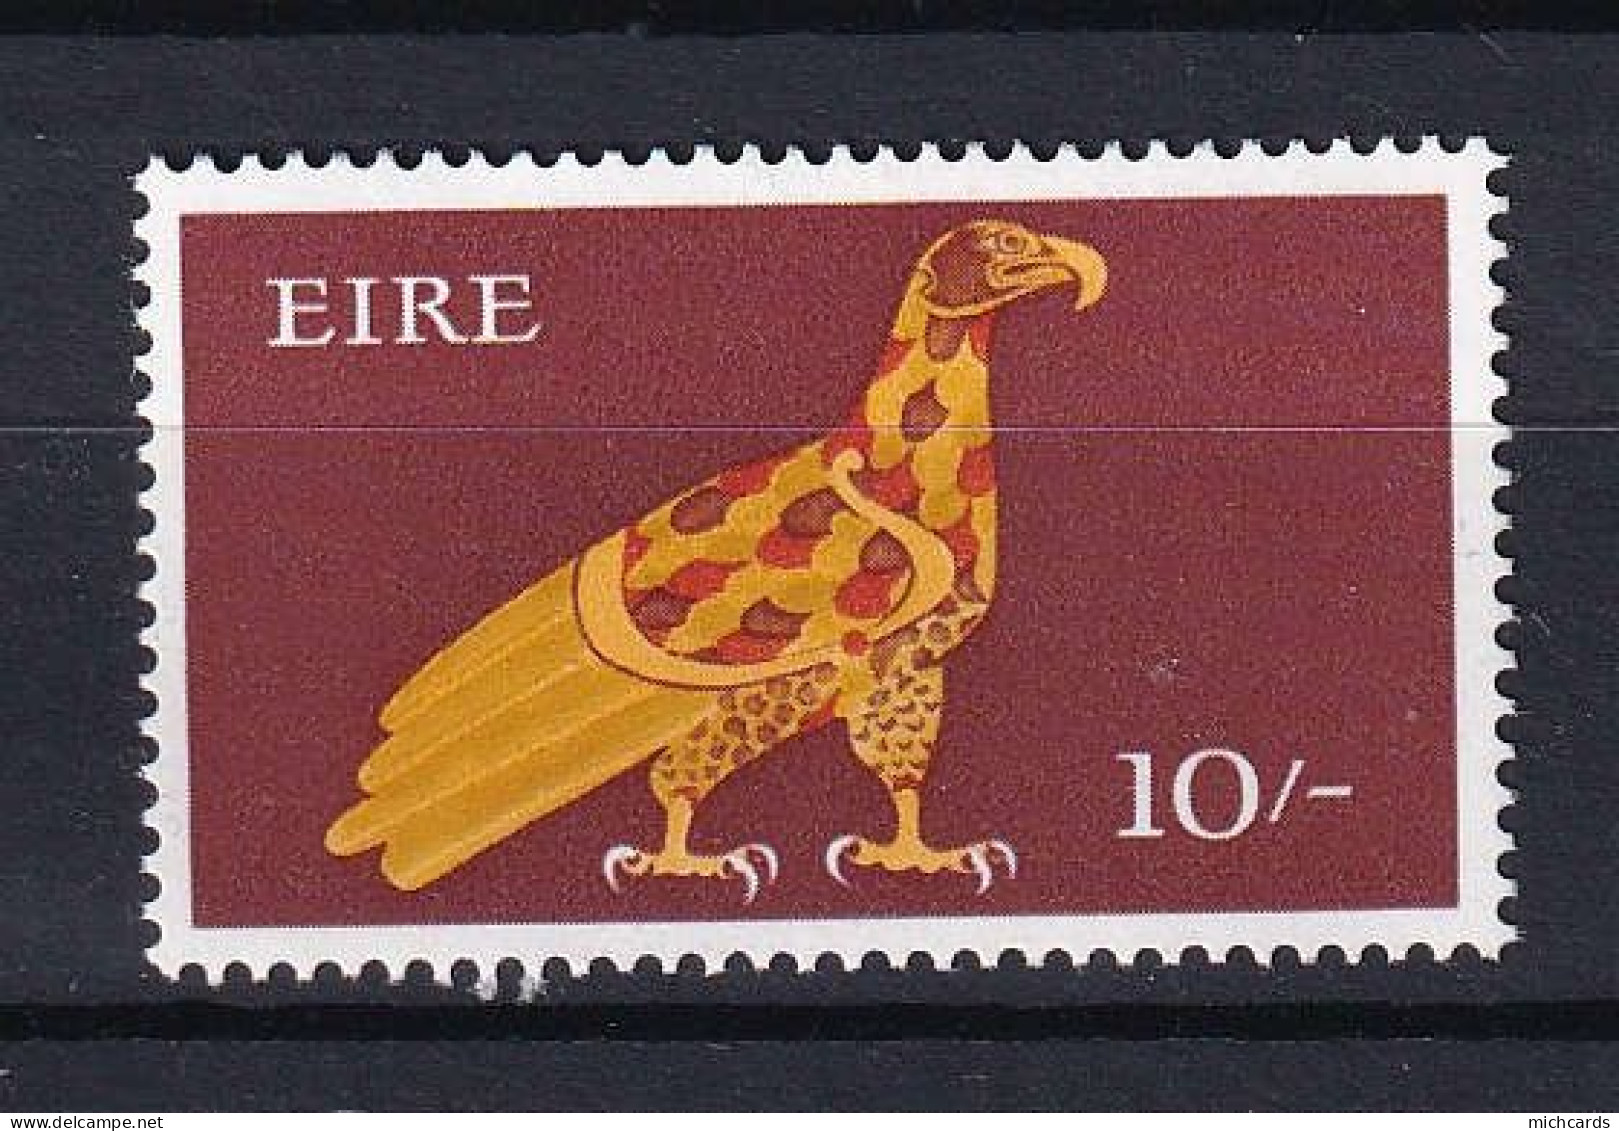 172 IRLANDE 1968/69 - Y&T 226 - Oiseau Rapace - Neuf ** (MNH) Sans Charniere - Ongebruikt